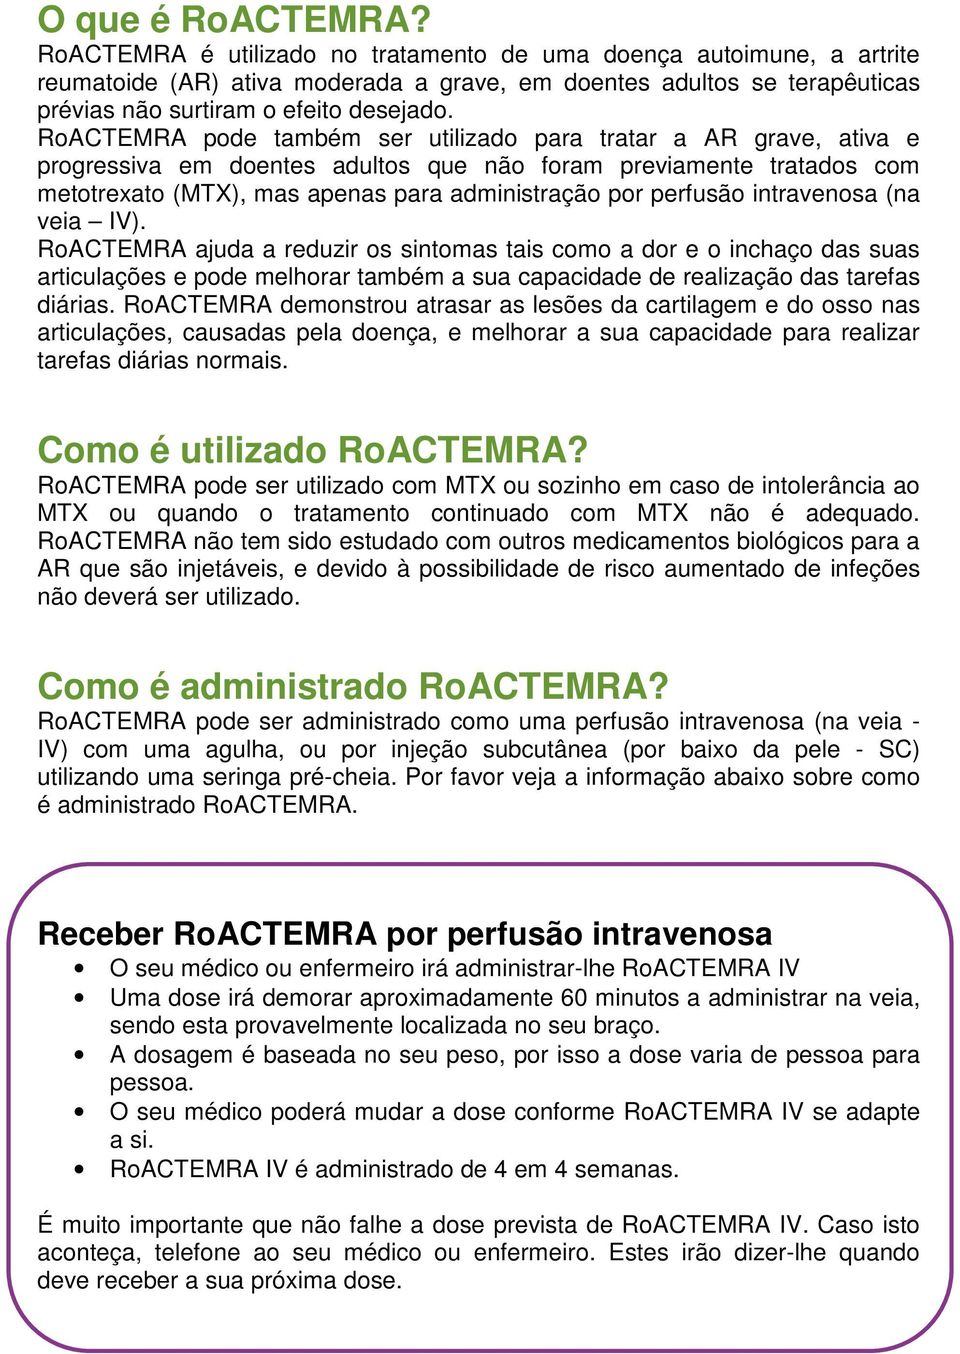 RoACTEMRA pode também ser utilizado para tratar a AR grave, ativa e progressiva em doentes adultos que não foram previamente tratados com metotrexato (MTX), mas apenas para administração por perfusão